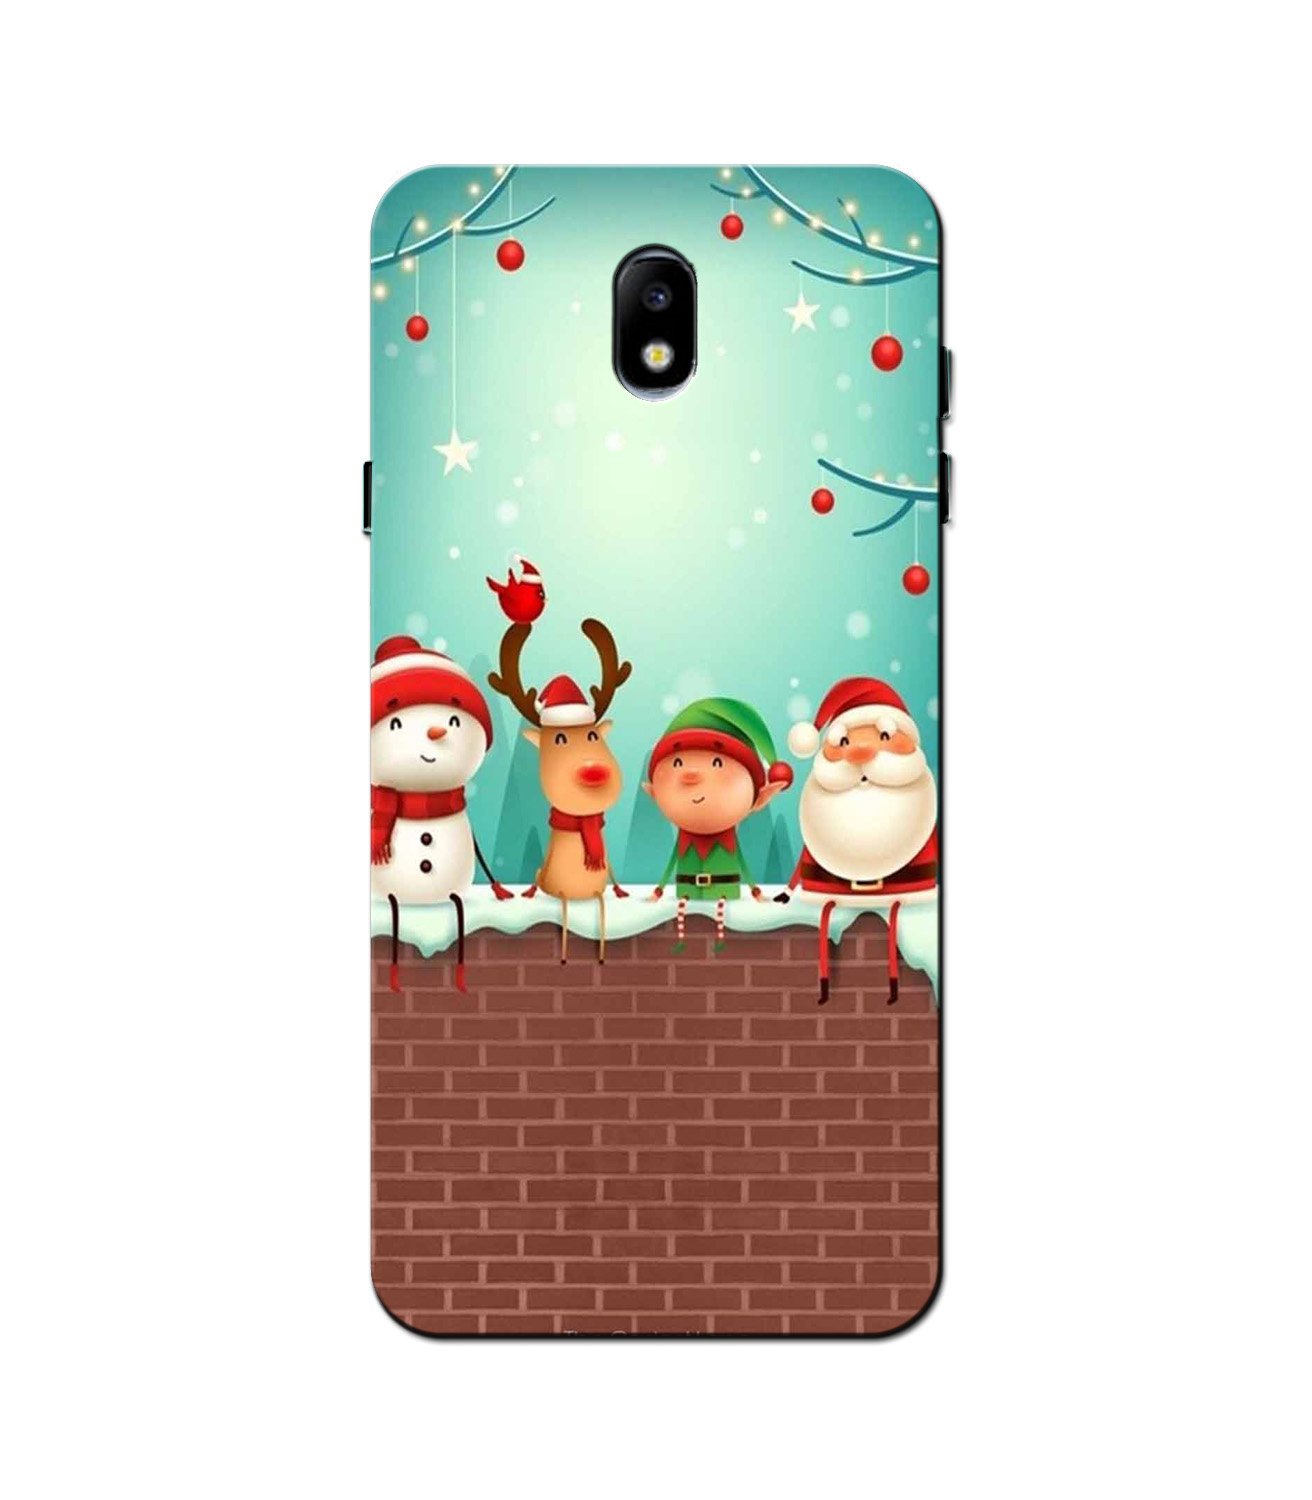 Santa Claus Mobile Back Case for Nokia 2 (Design - 334)